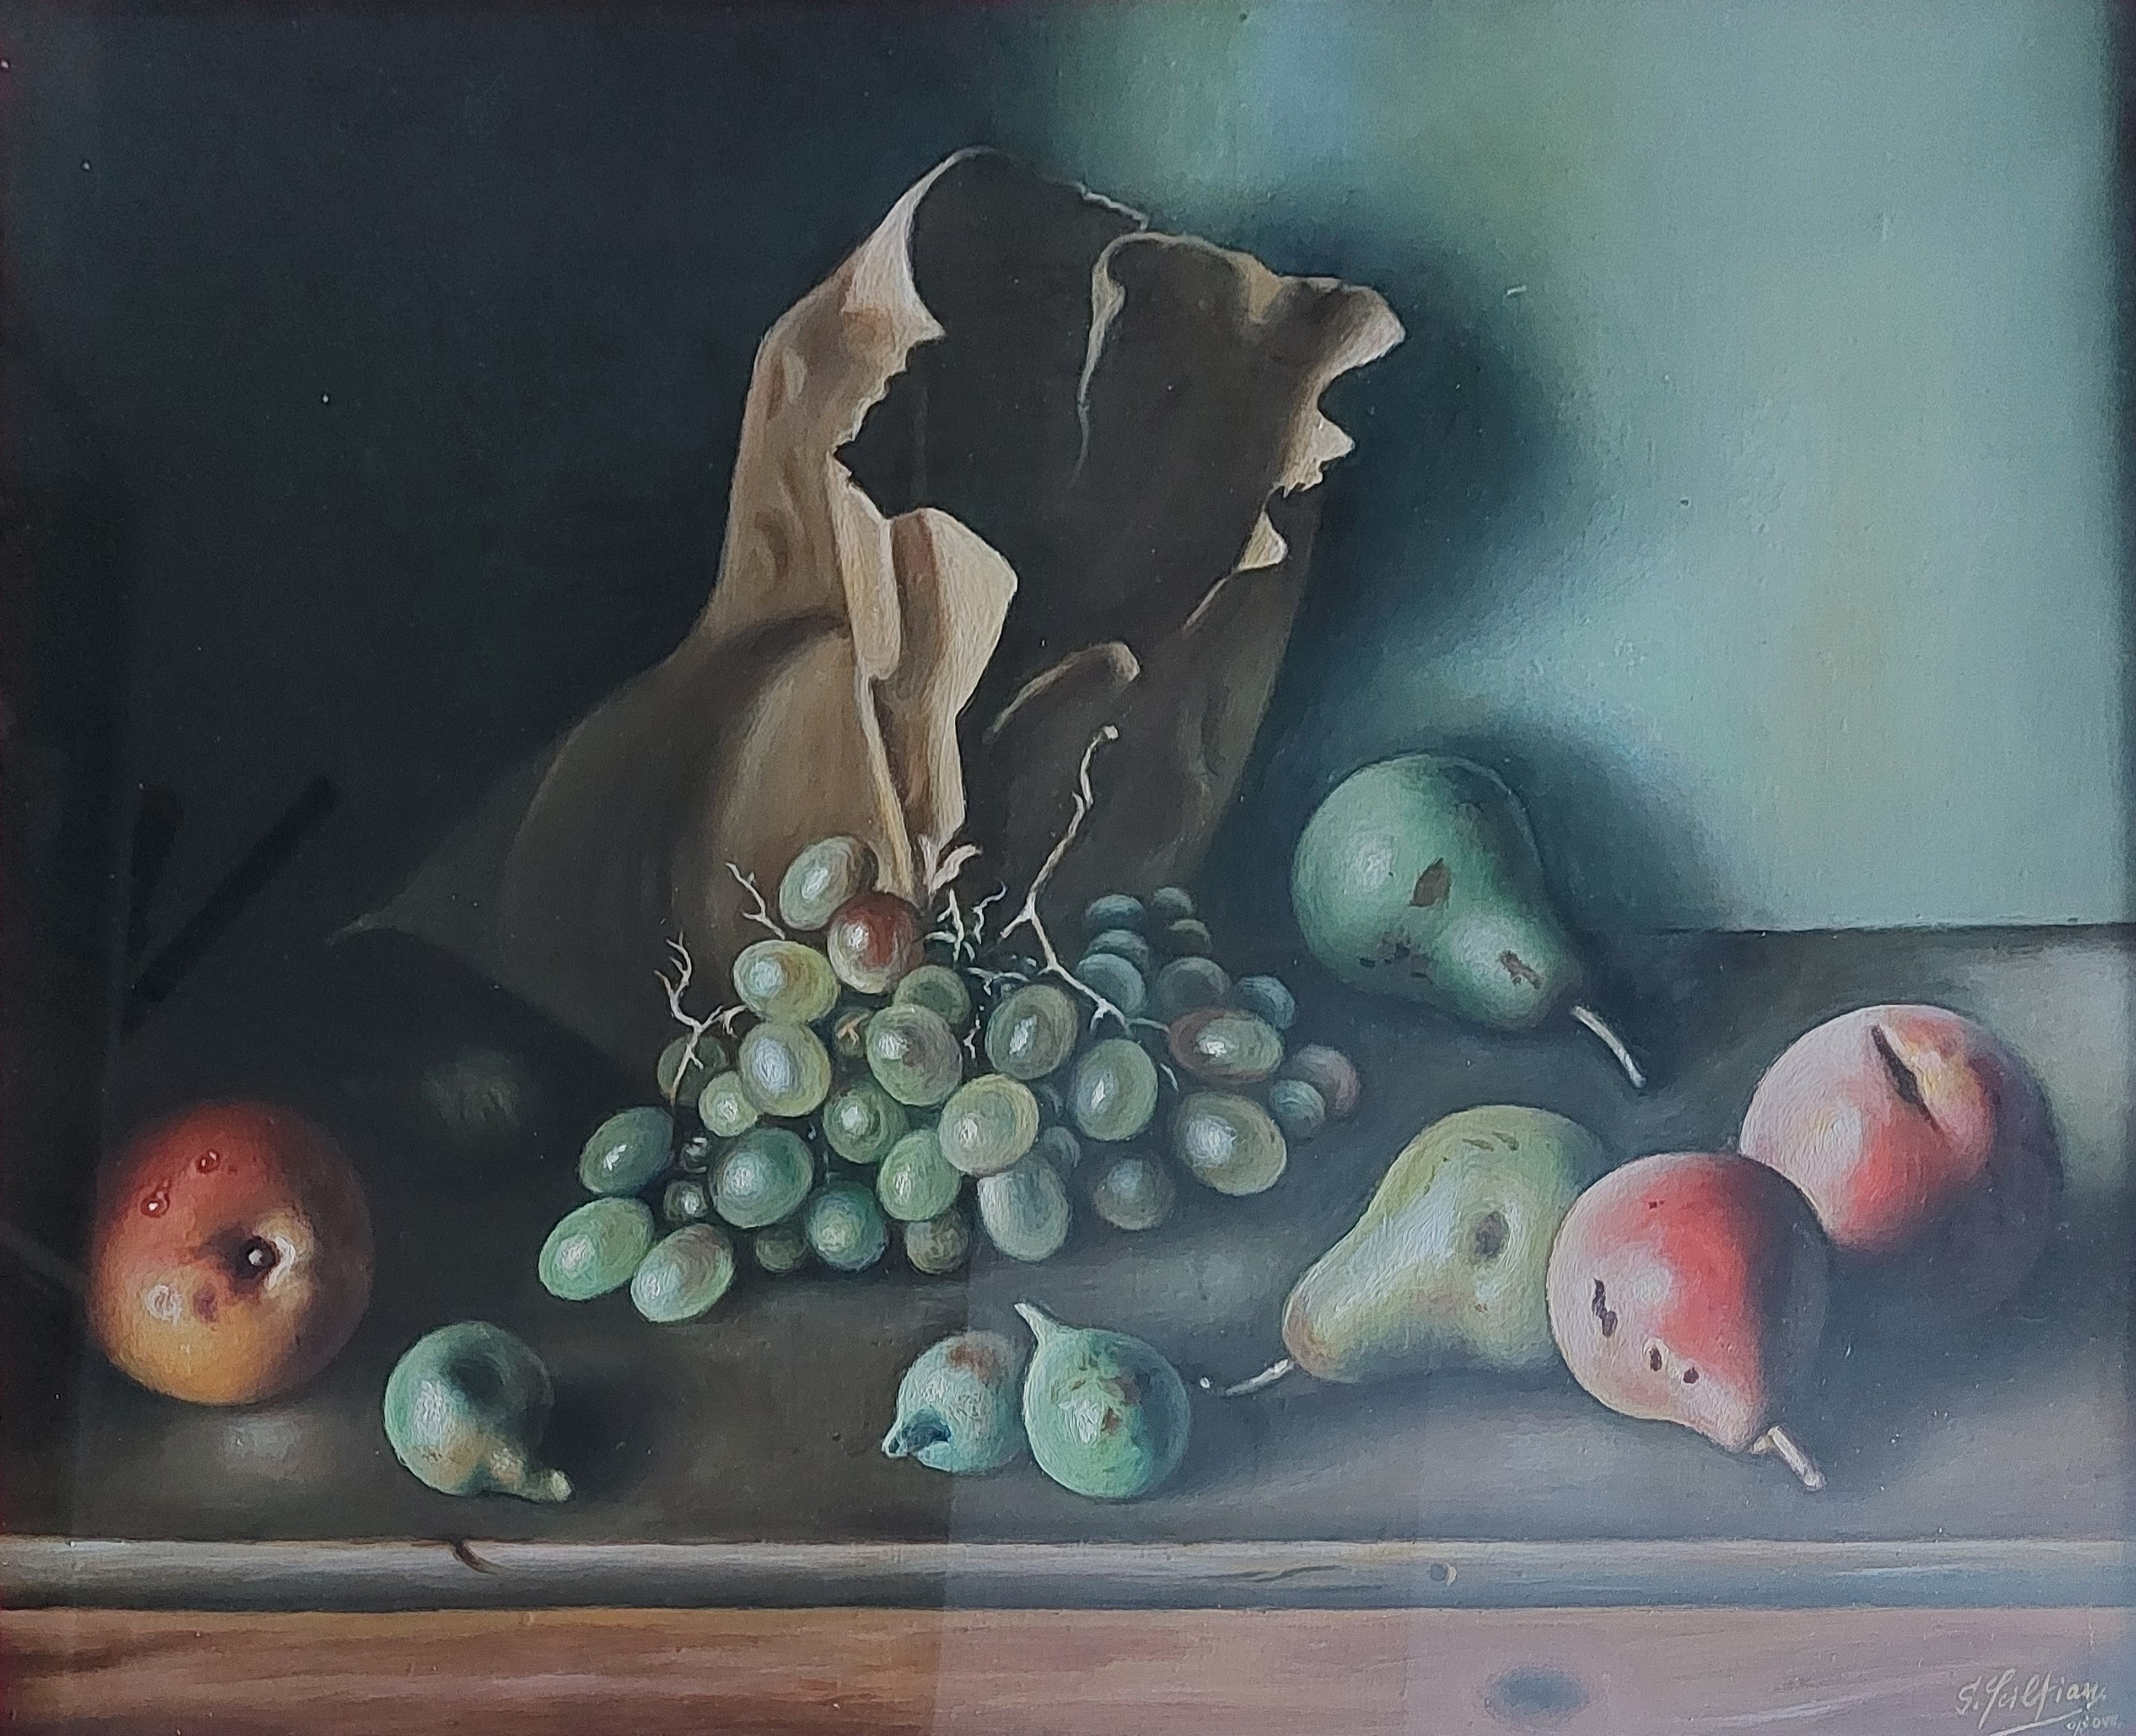 Fruit by Gregorio Sciltian, 1977